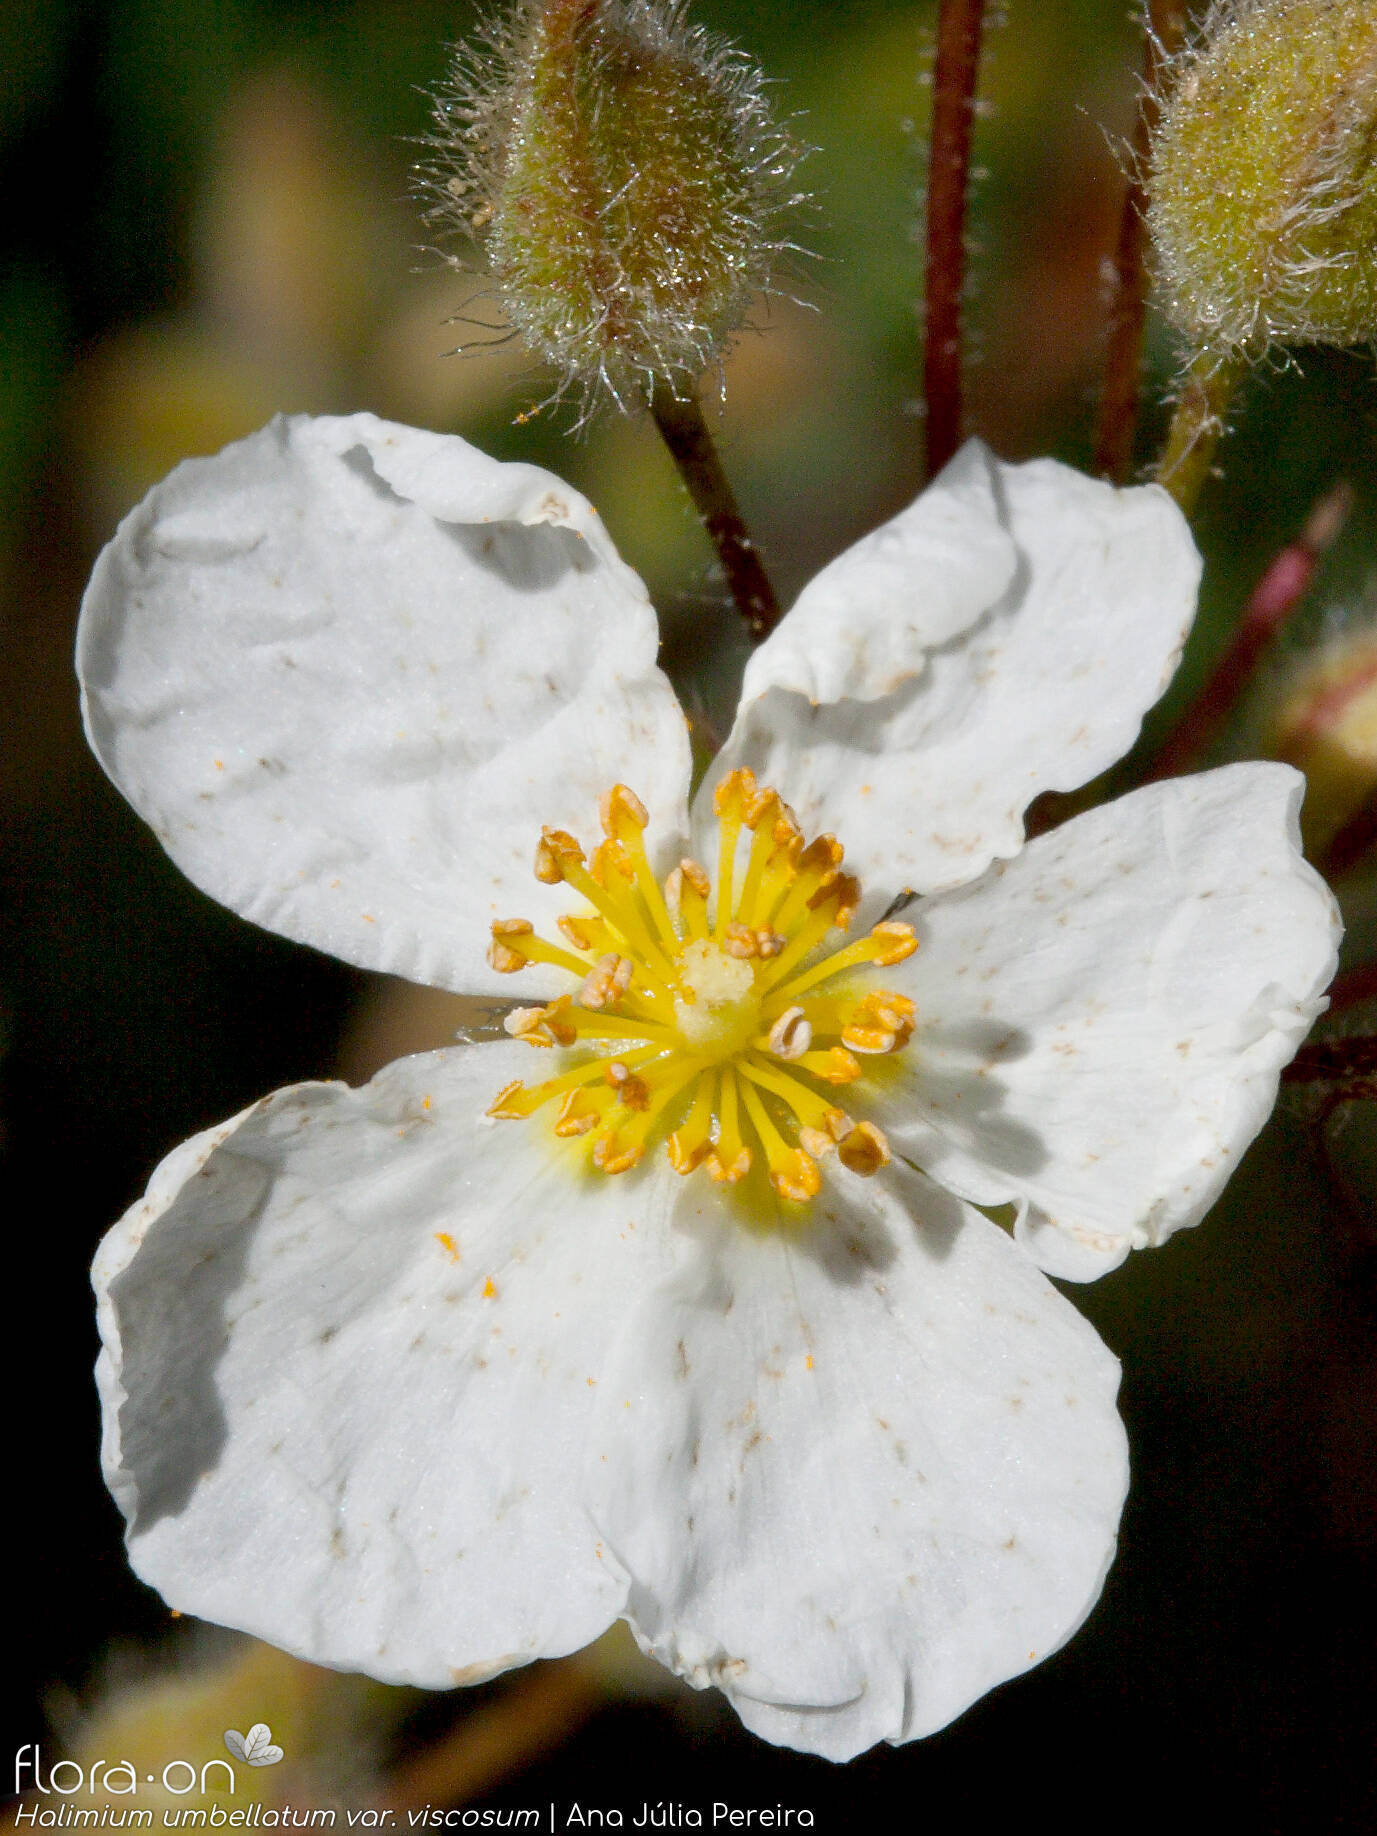 Halimium umbellatum - Flor (close-up) | Ana Júlia Pereira; CC BY-NC 4.0